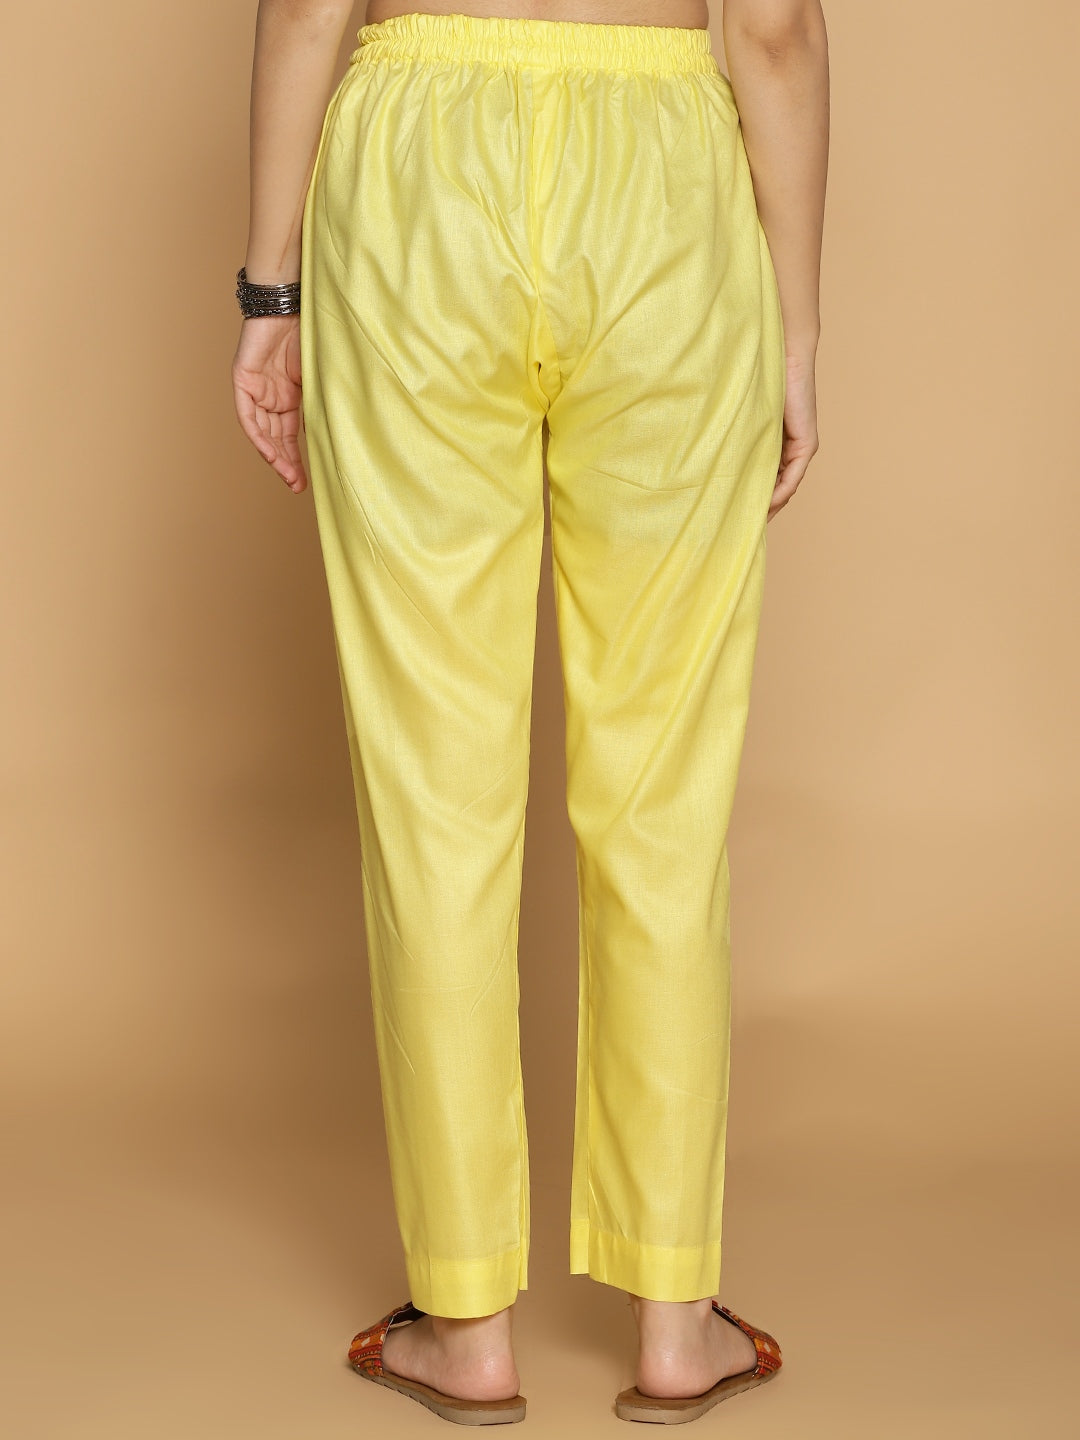 Lemon Rayon Pants